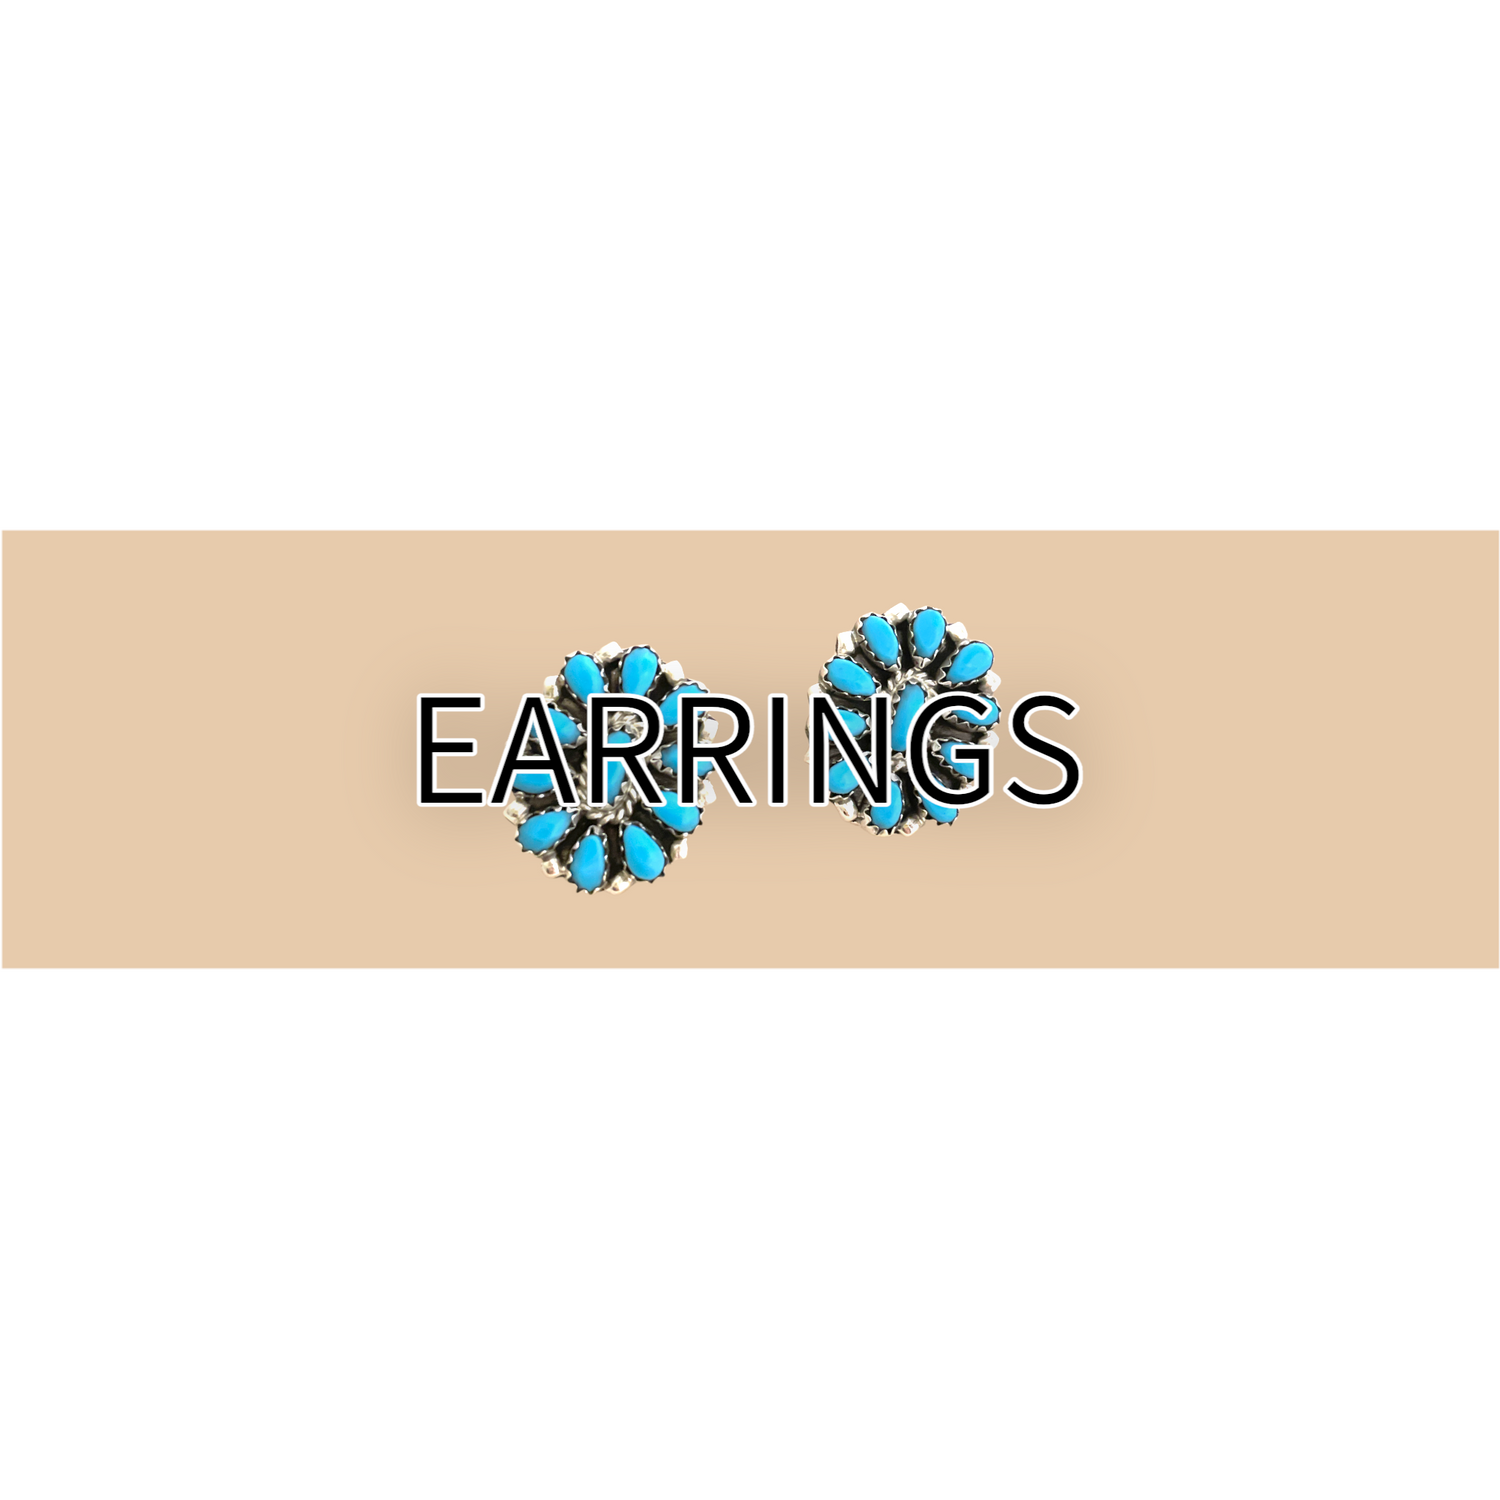 EARRINGS